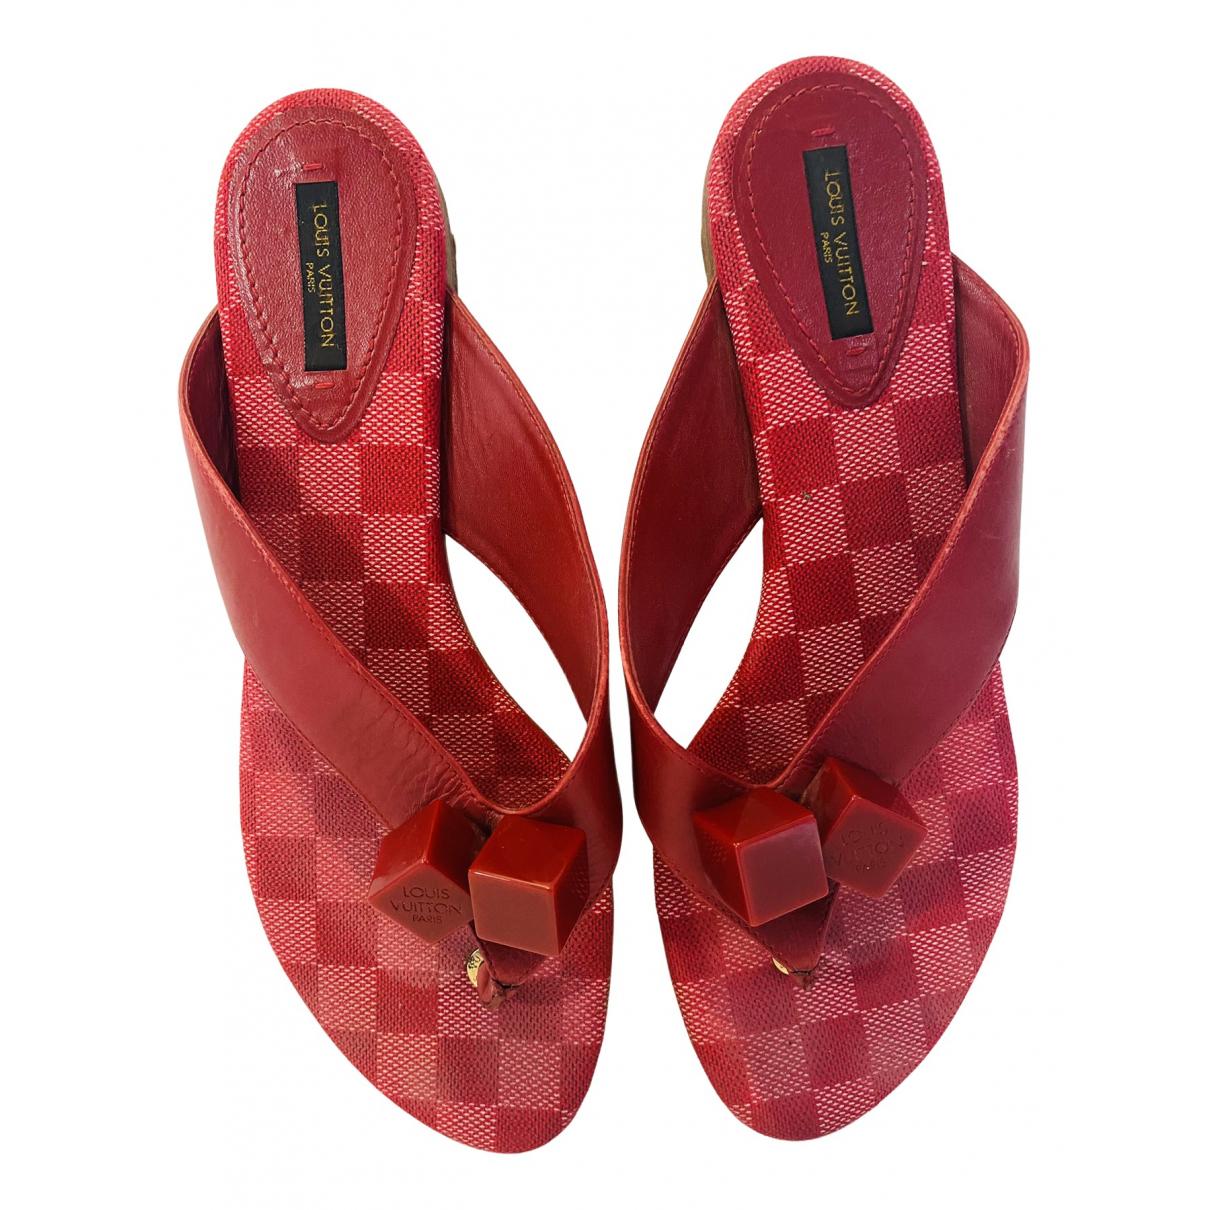 Calzado Louis Vuitton de color rojo para Hombre - Vestiaire Collective